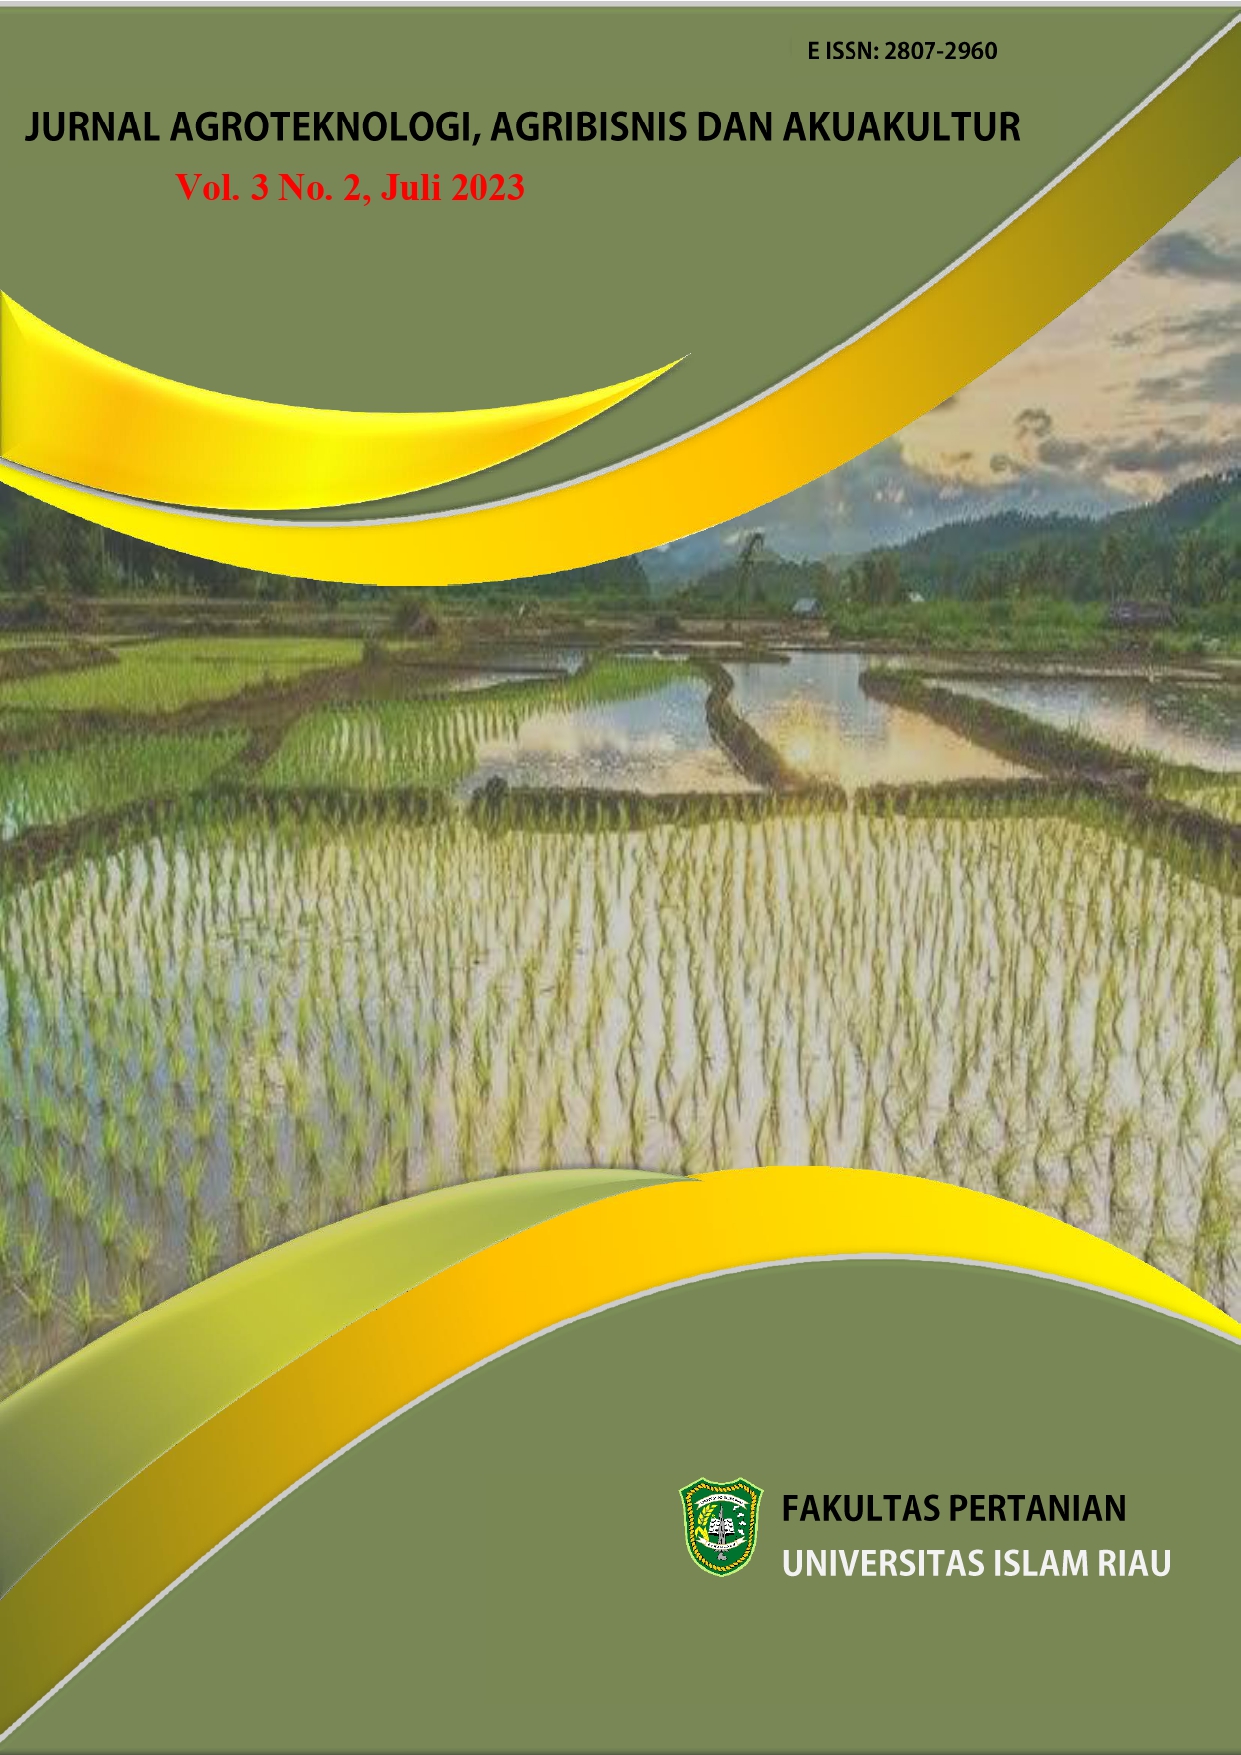 					View Vol. 3 No. 2 (2023): Jurnal Agroteknologi Agribisnis dan Akuakultur Edisi Juli 2023
				